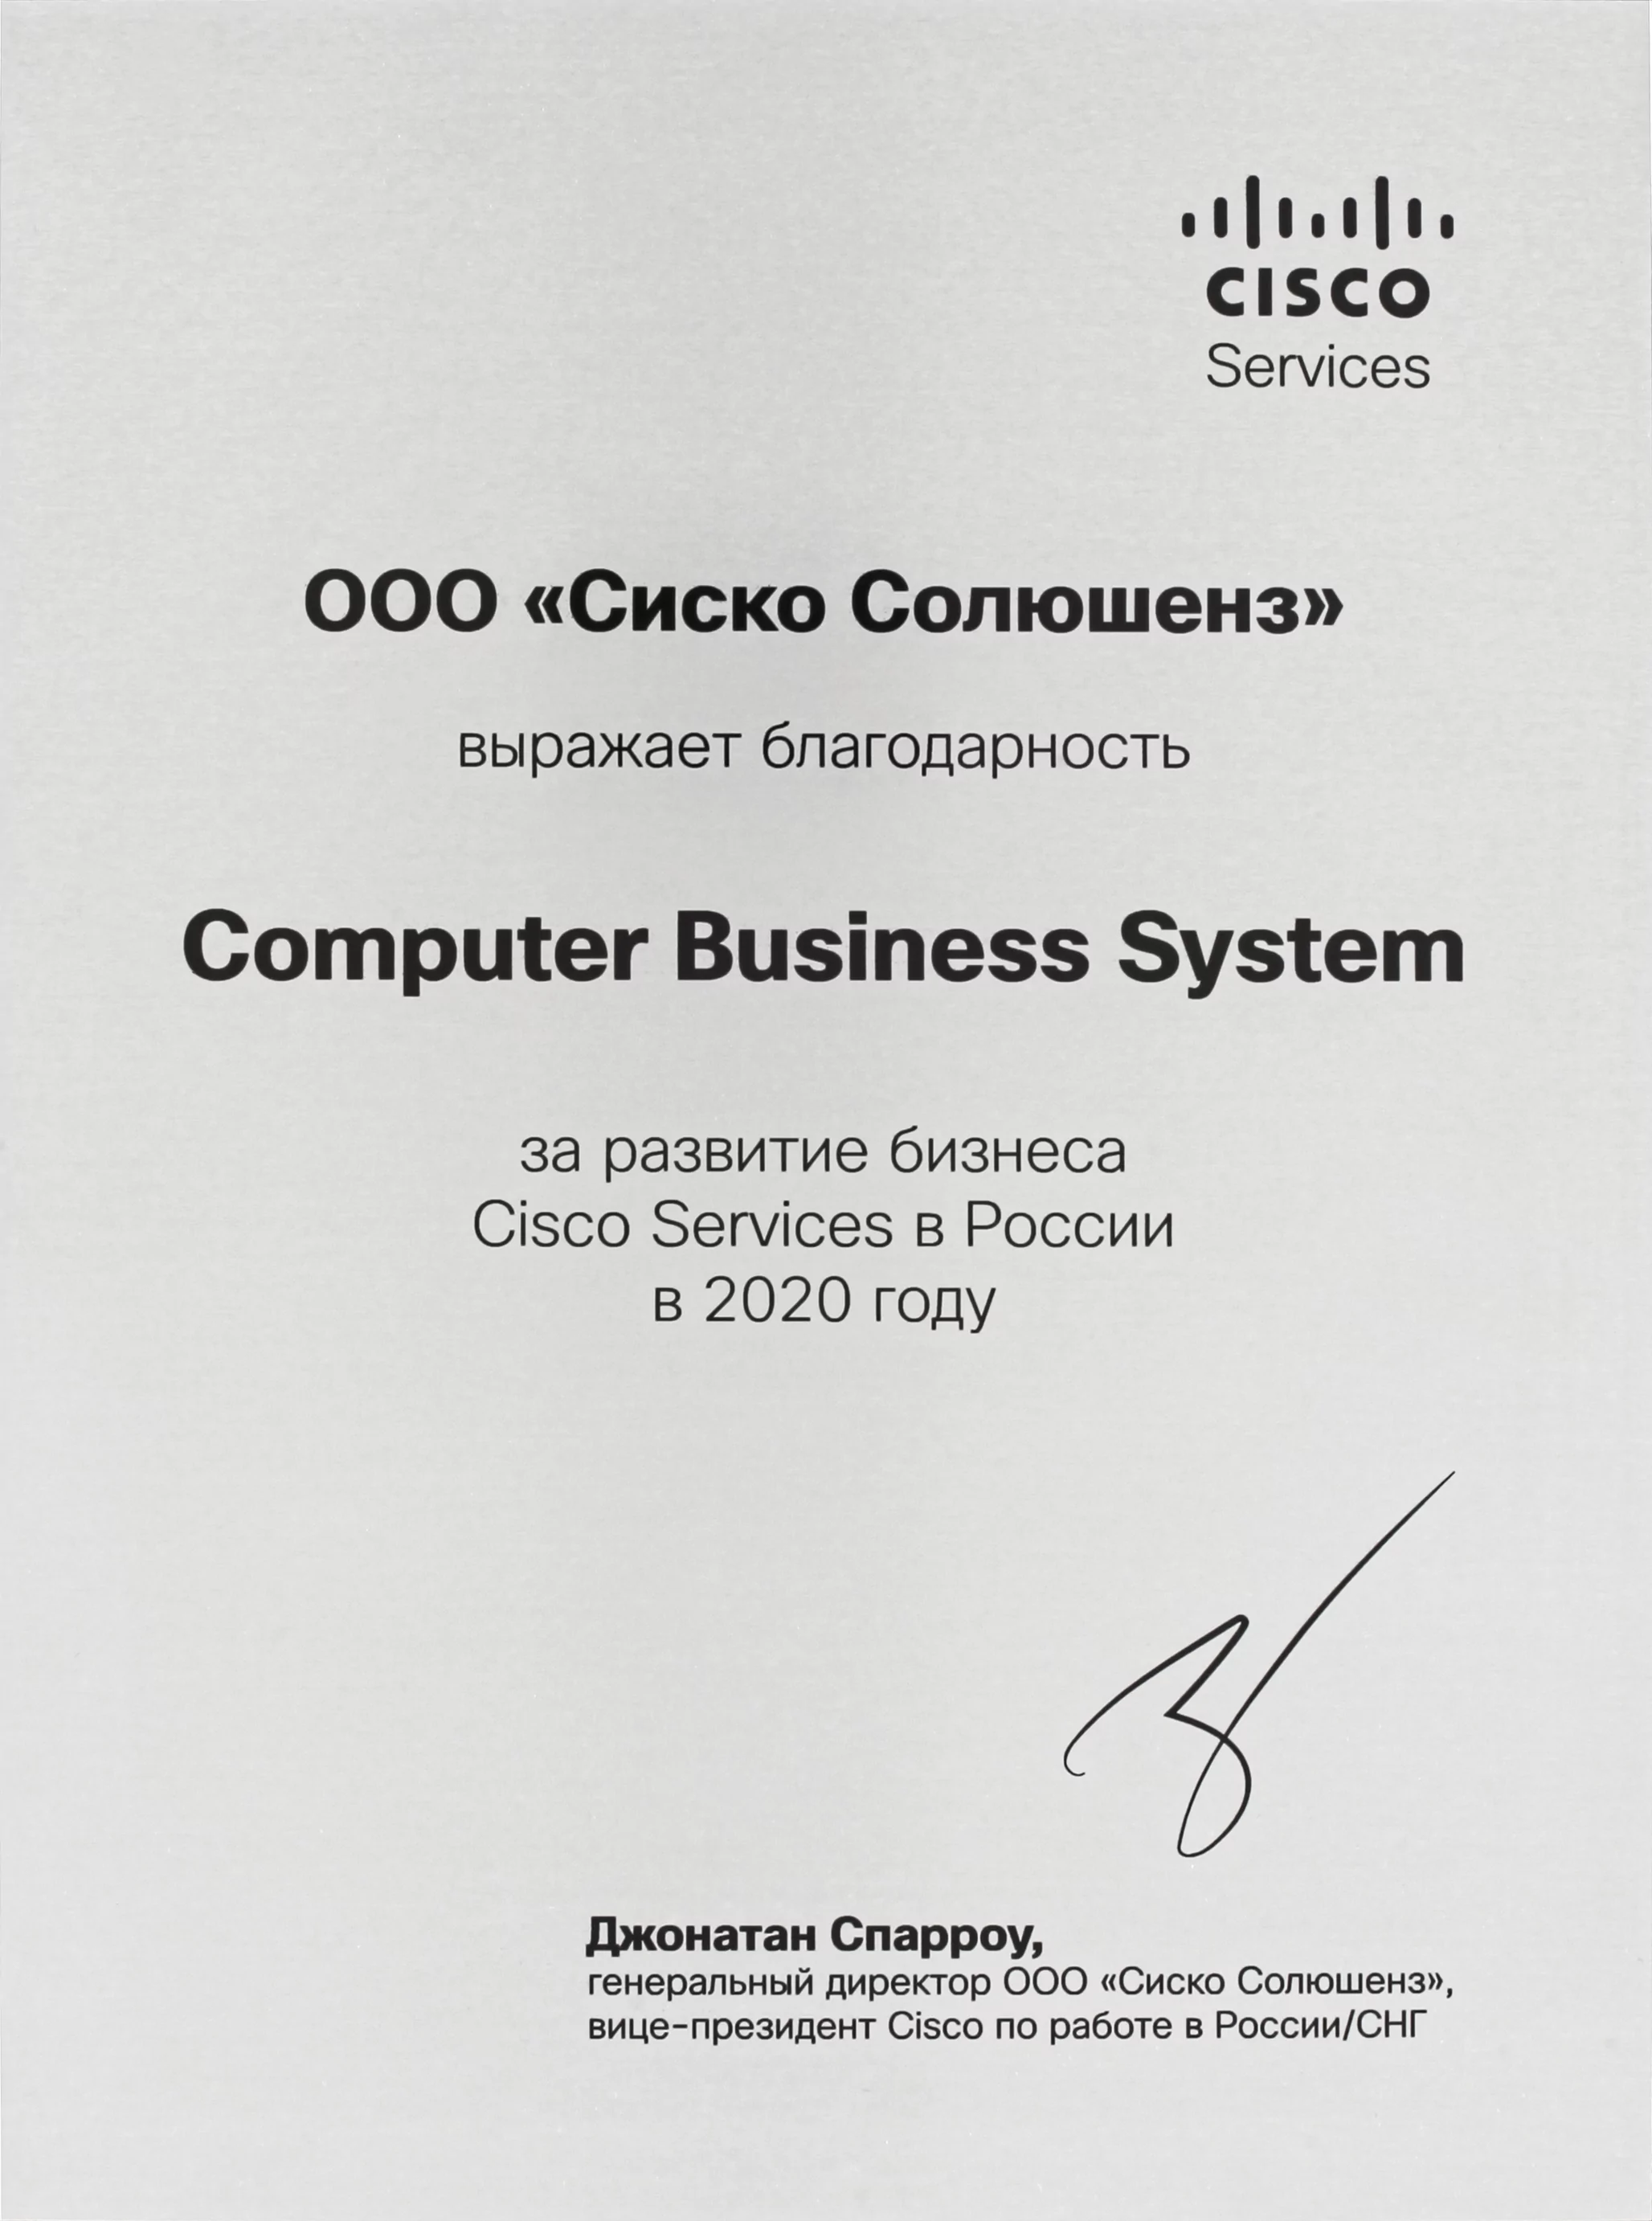 CBS награда по направлению Cisco Services